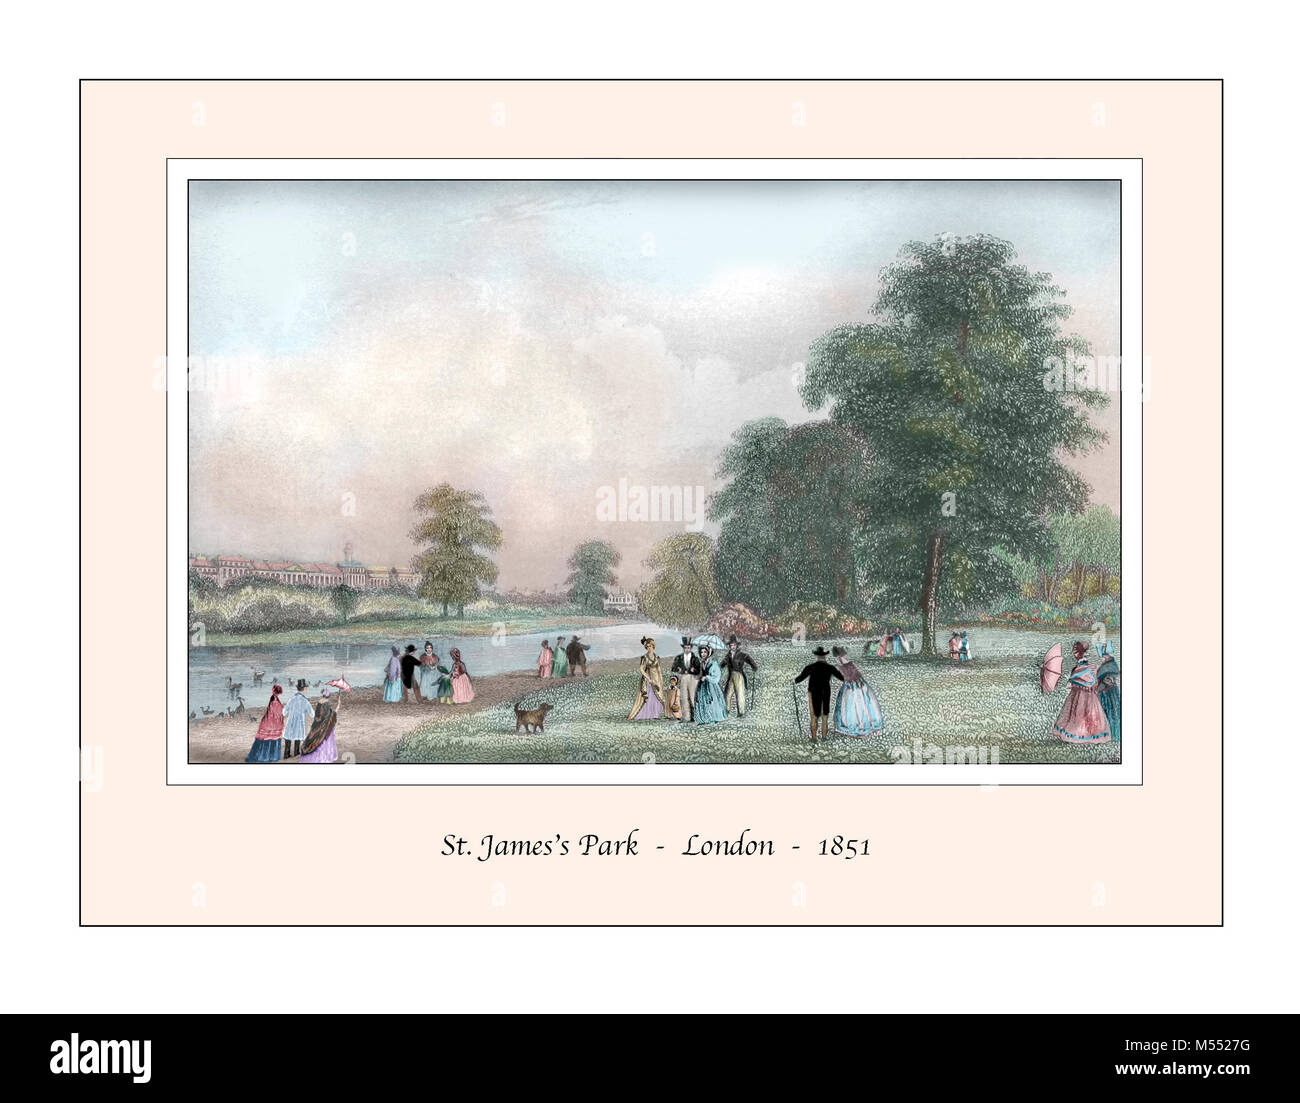 Le parc de St James London Design original basé sur une gravure du xixe siècle Banque D'Images